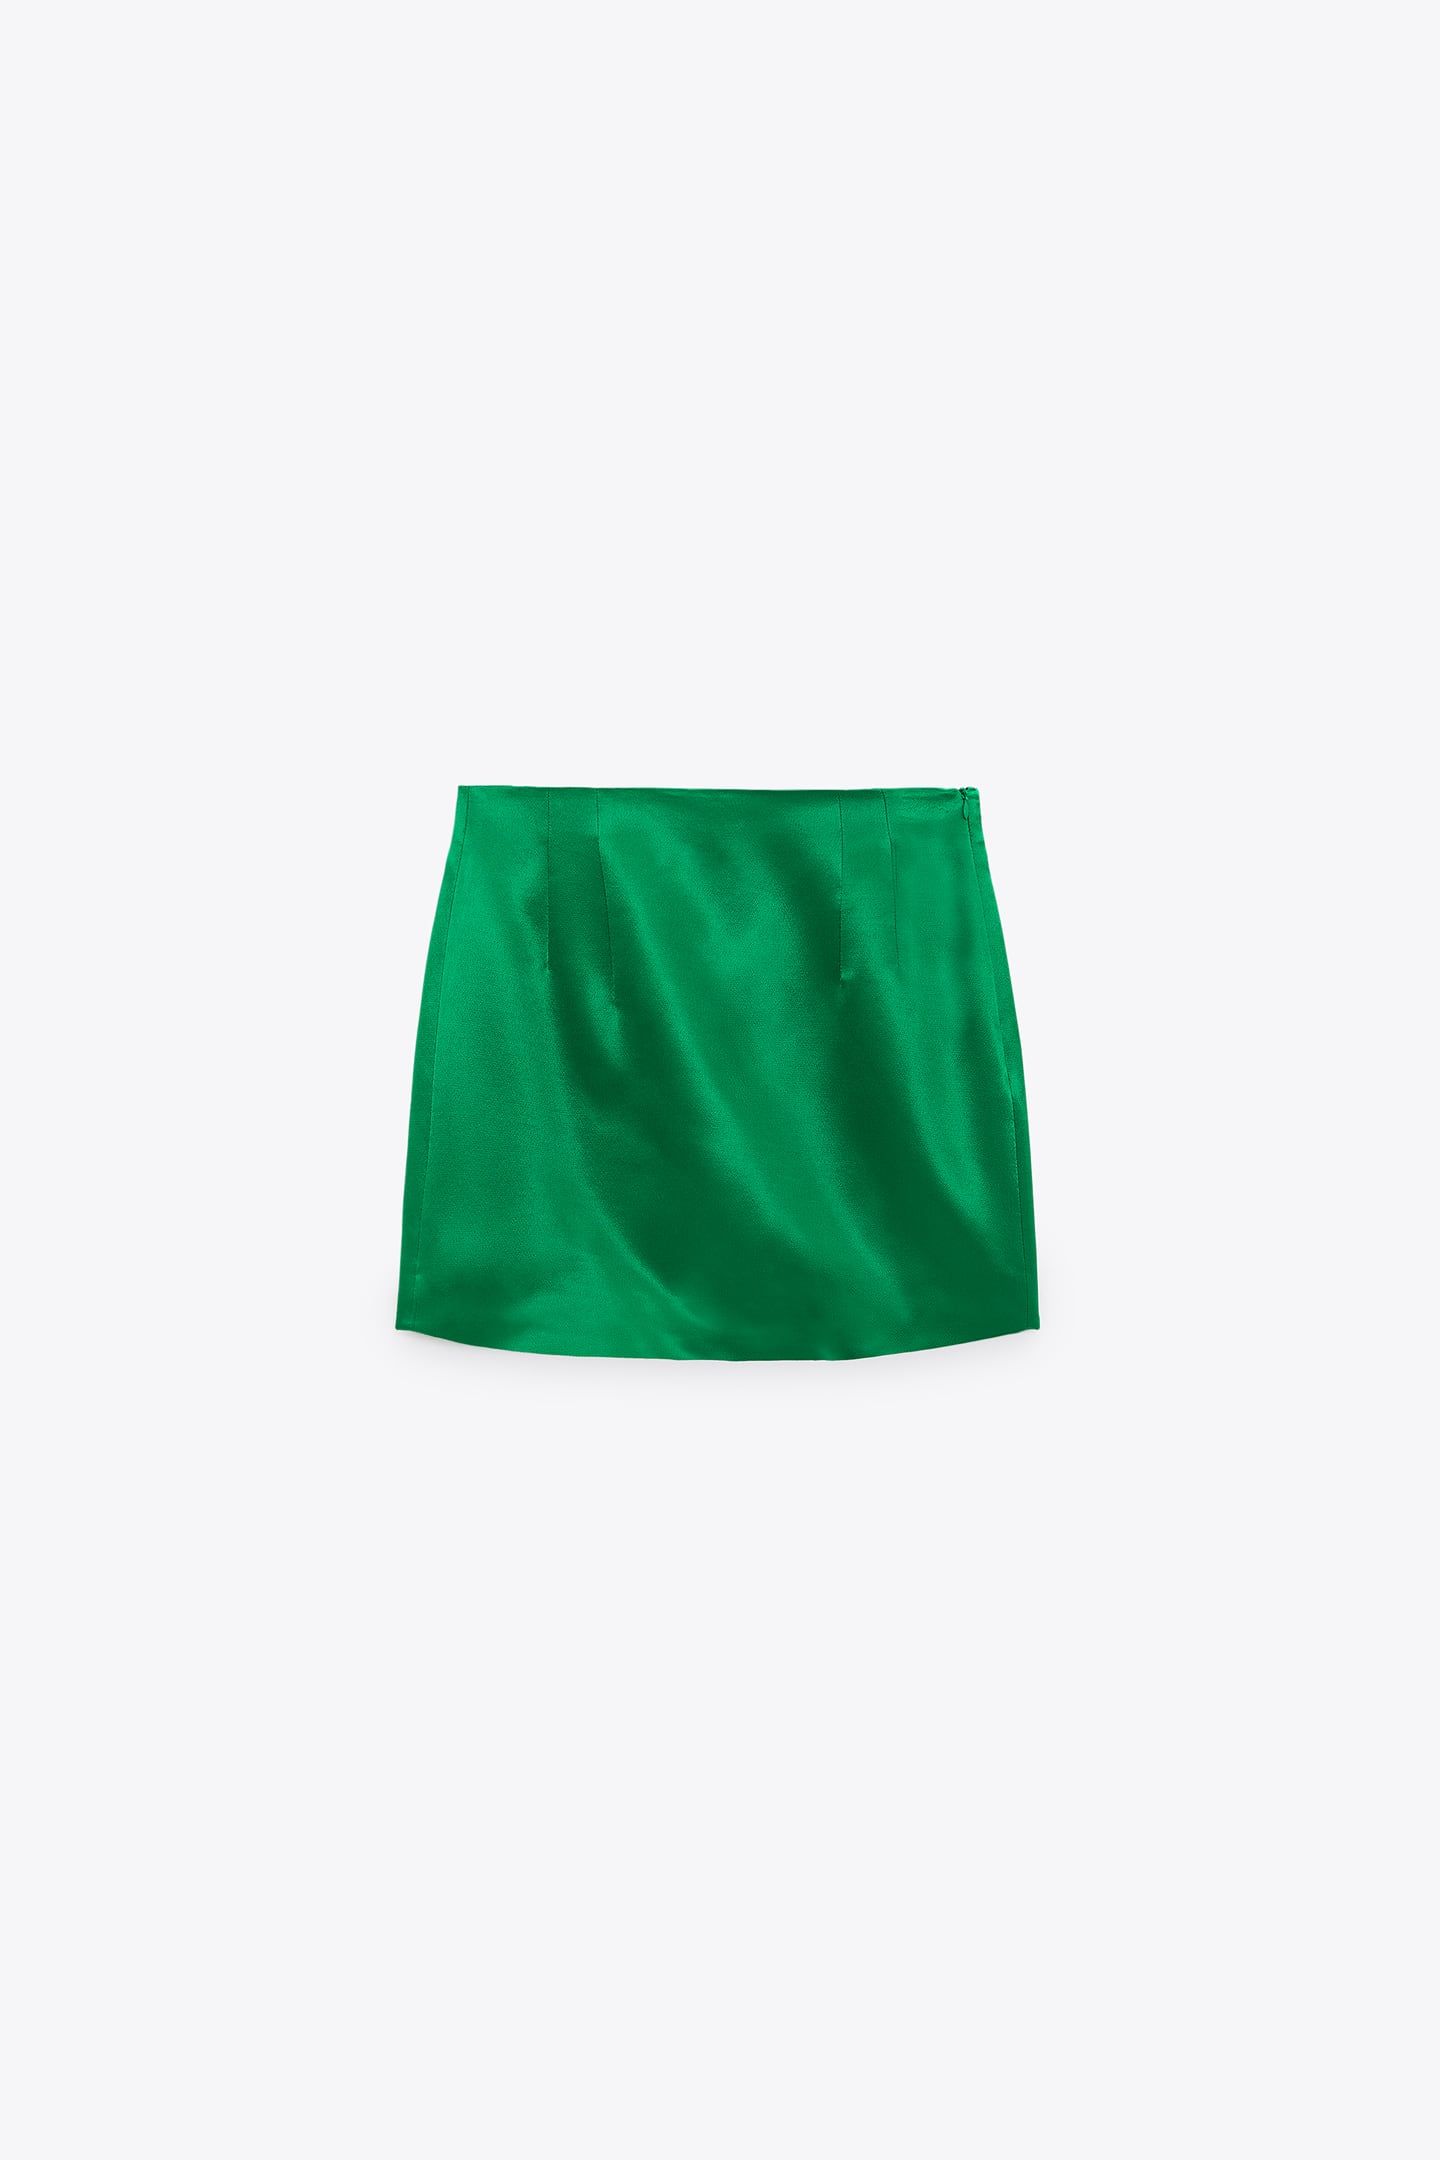 heredar estático Perforación La falda de Zara inspirada en Carrie Bradshaw viral de Instagram